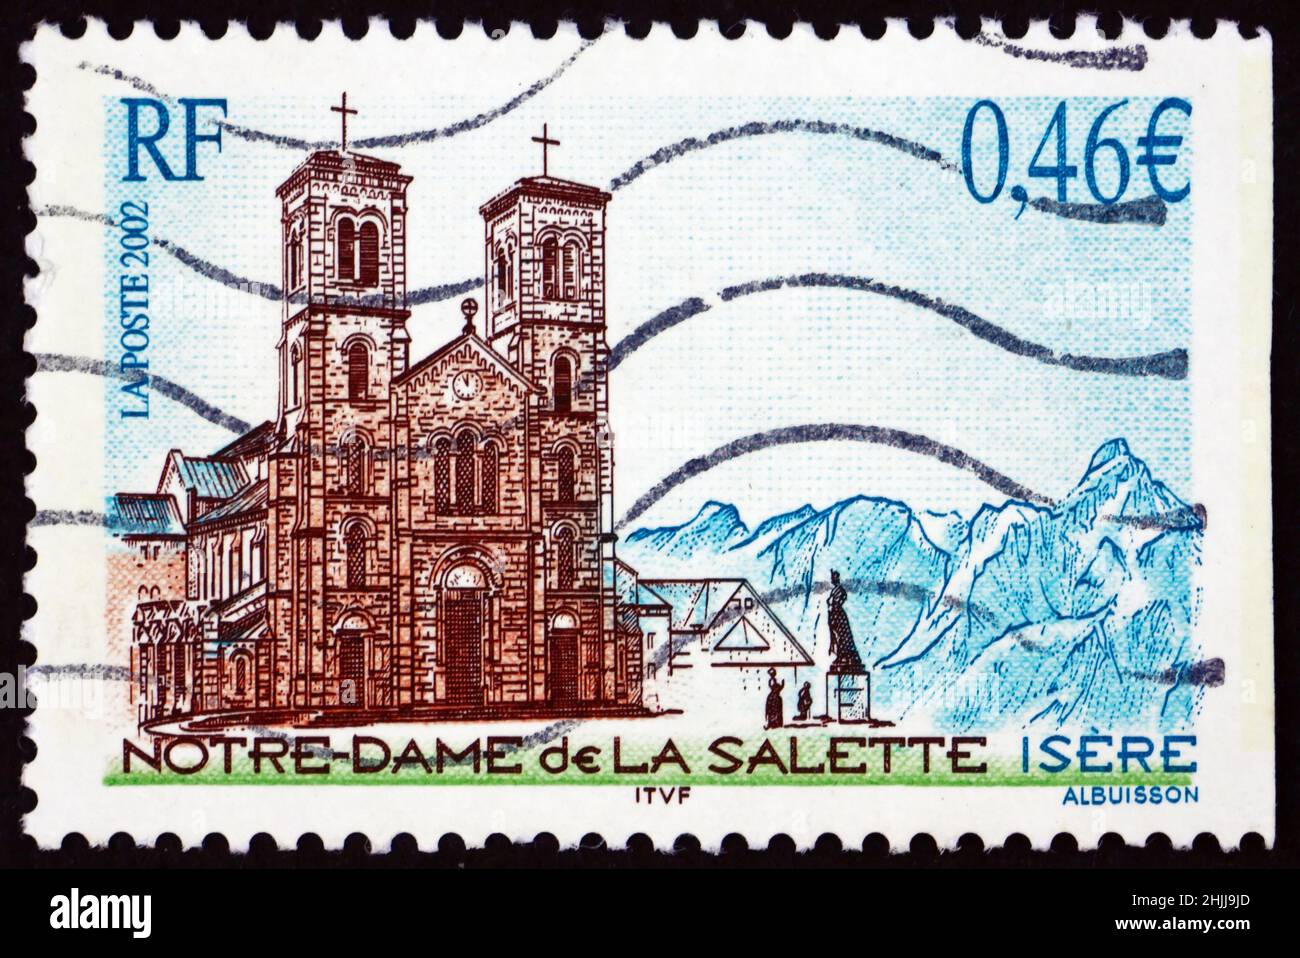 FRANCE - VERS 2002 : un timbre imprimé en France montre la basilique notre-Dame de la Salette, 150th anniversaire du pèlerinage, vers 2002 Banque D'Images